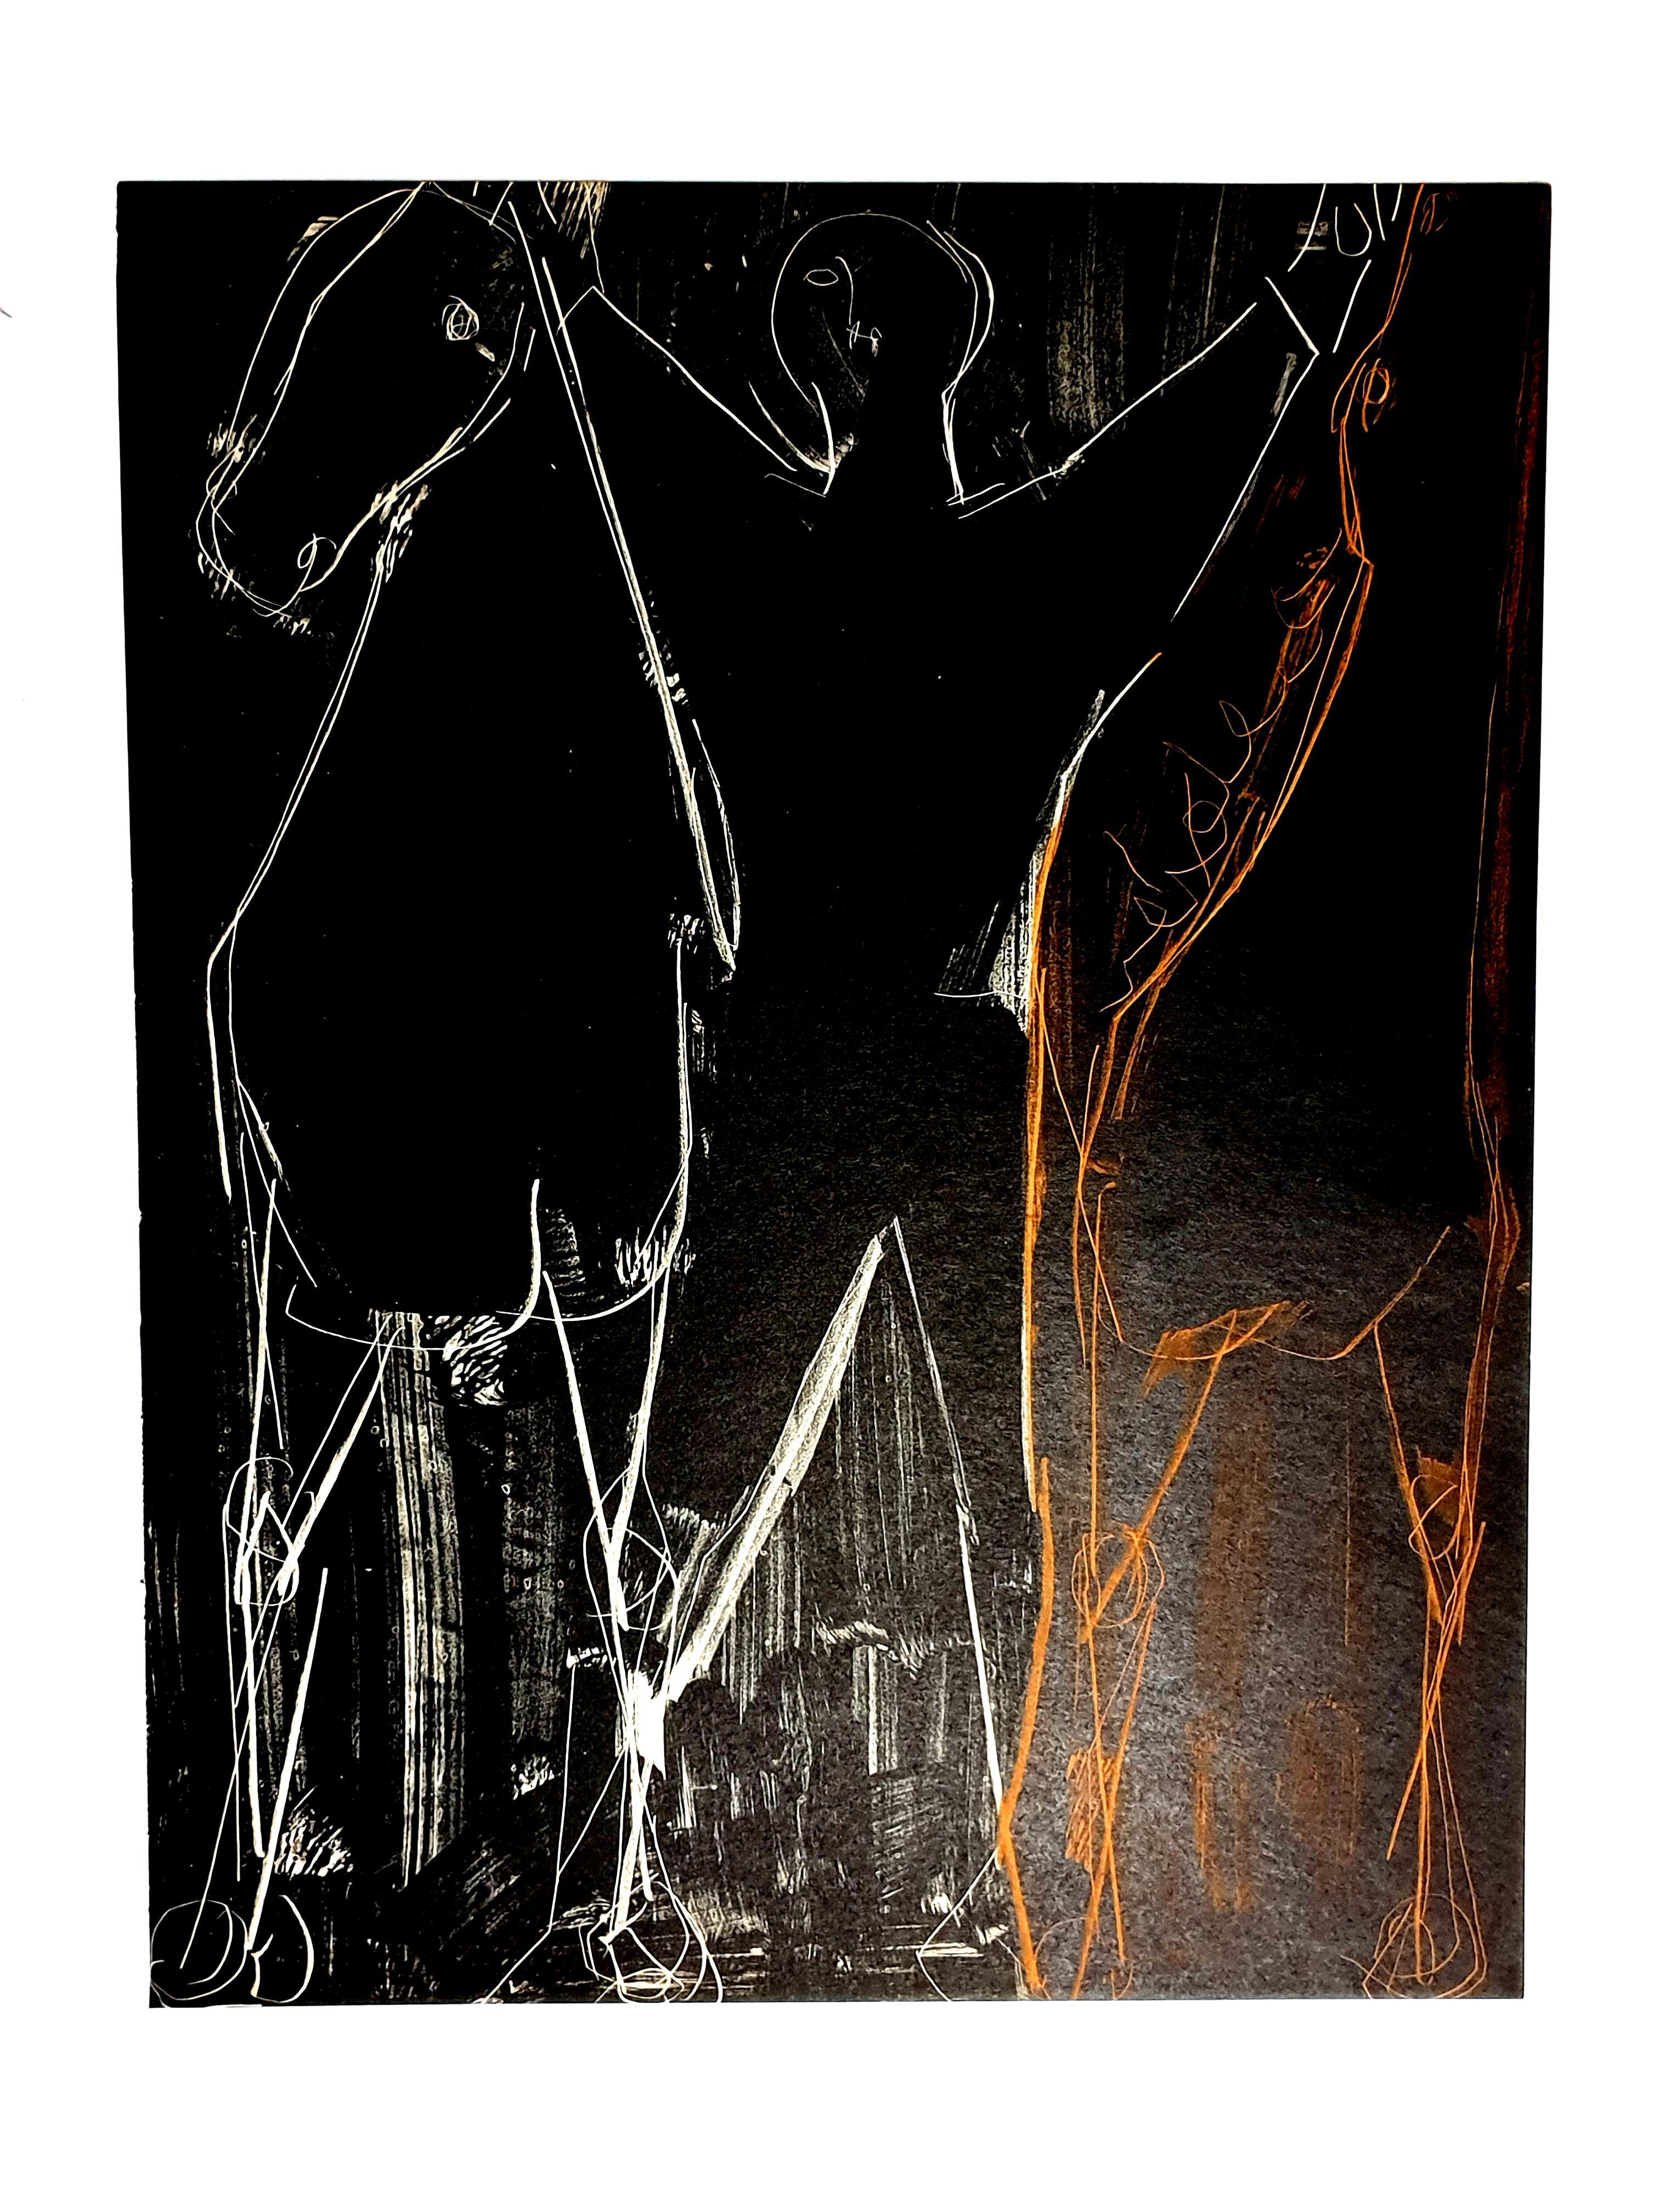 Marino Marini - Chevaux - Lithographie originale
1951
Dimensions : 32 x 24 cm
Extrait de la revue d'art XXe siècle
Non signé et non numéroté tel que publié